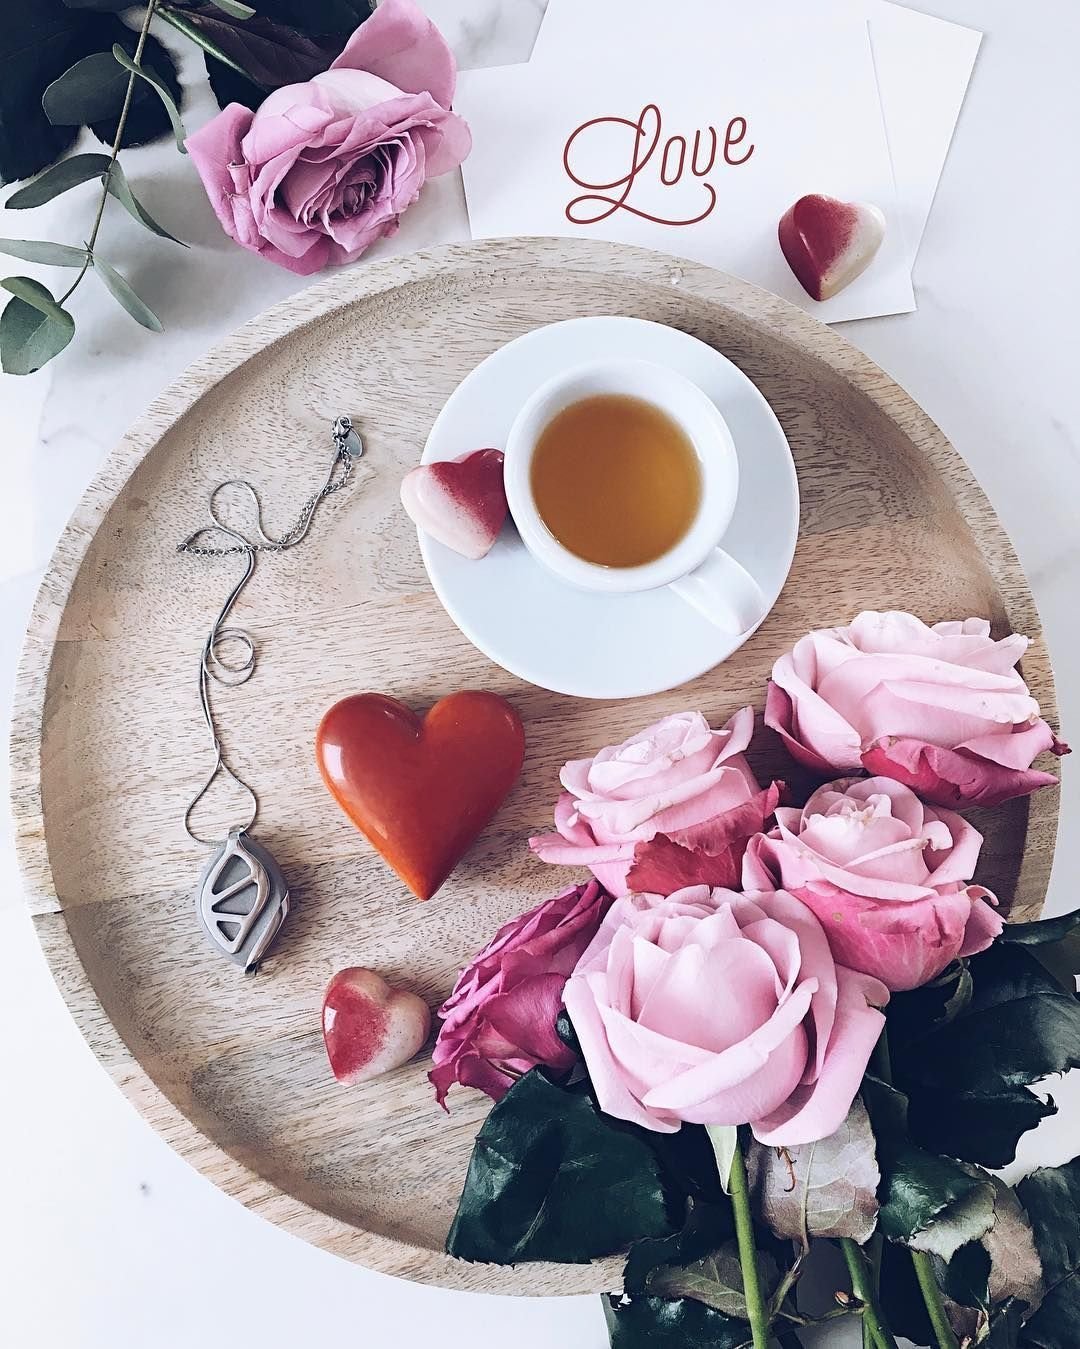 Чувственное доброе утро. Романтическое утро. Доброе утро милая. Завтрак с цветами. Романтические открытки с добрым утром.